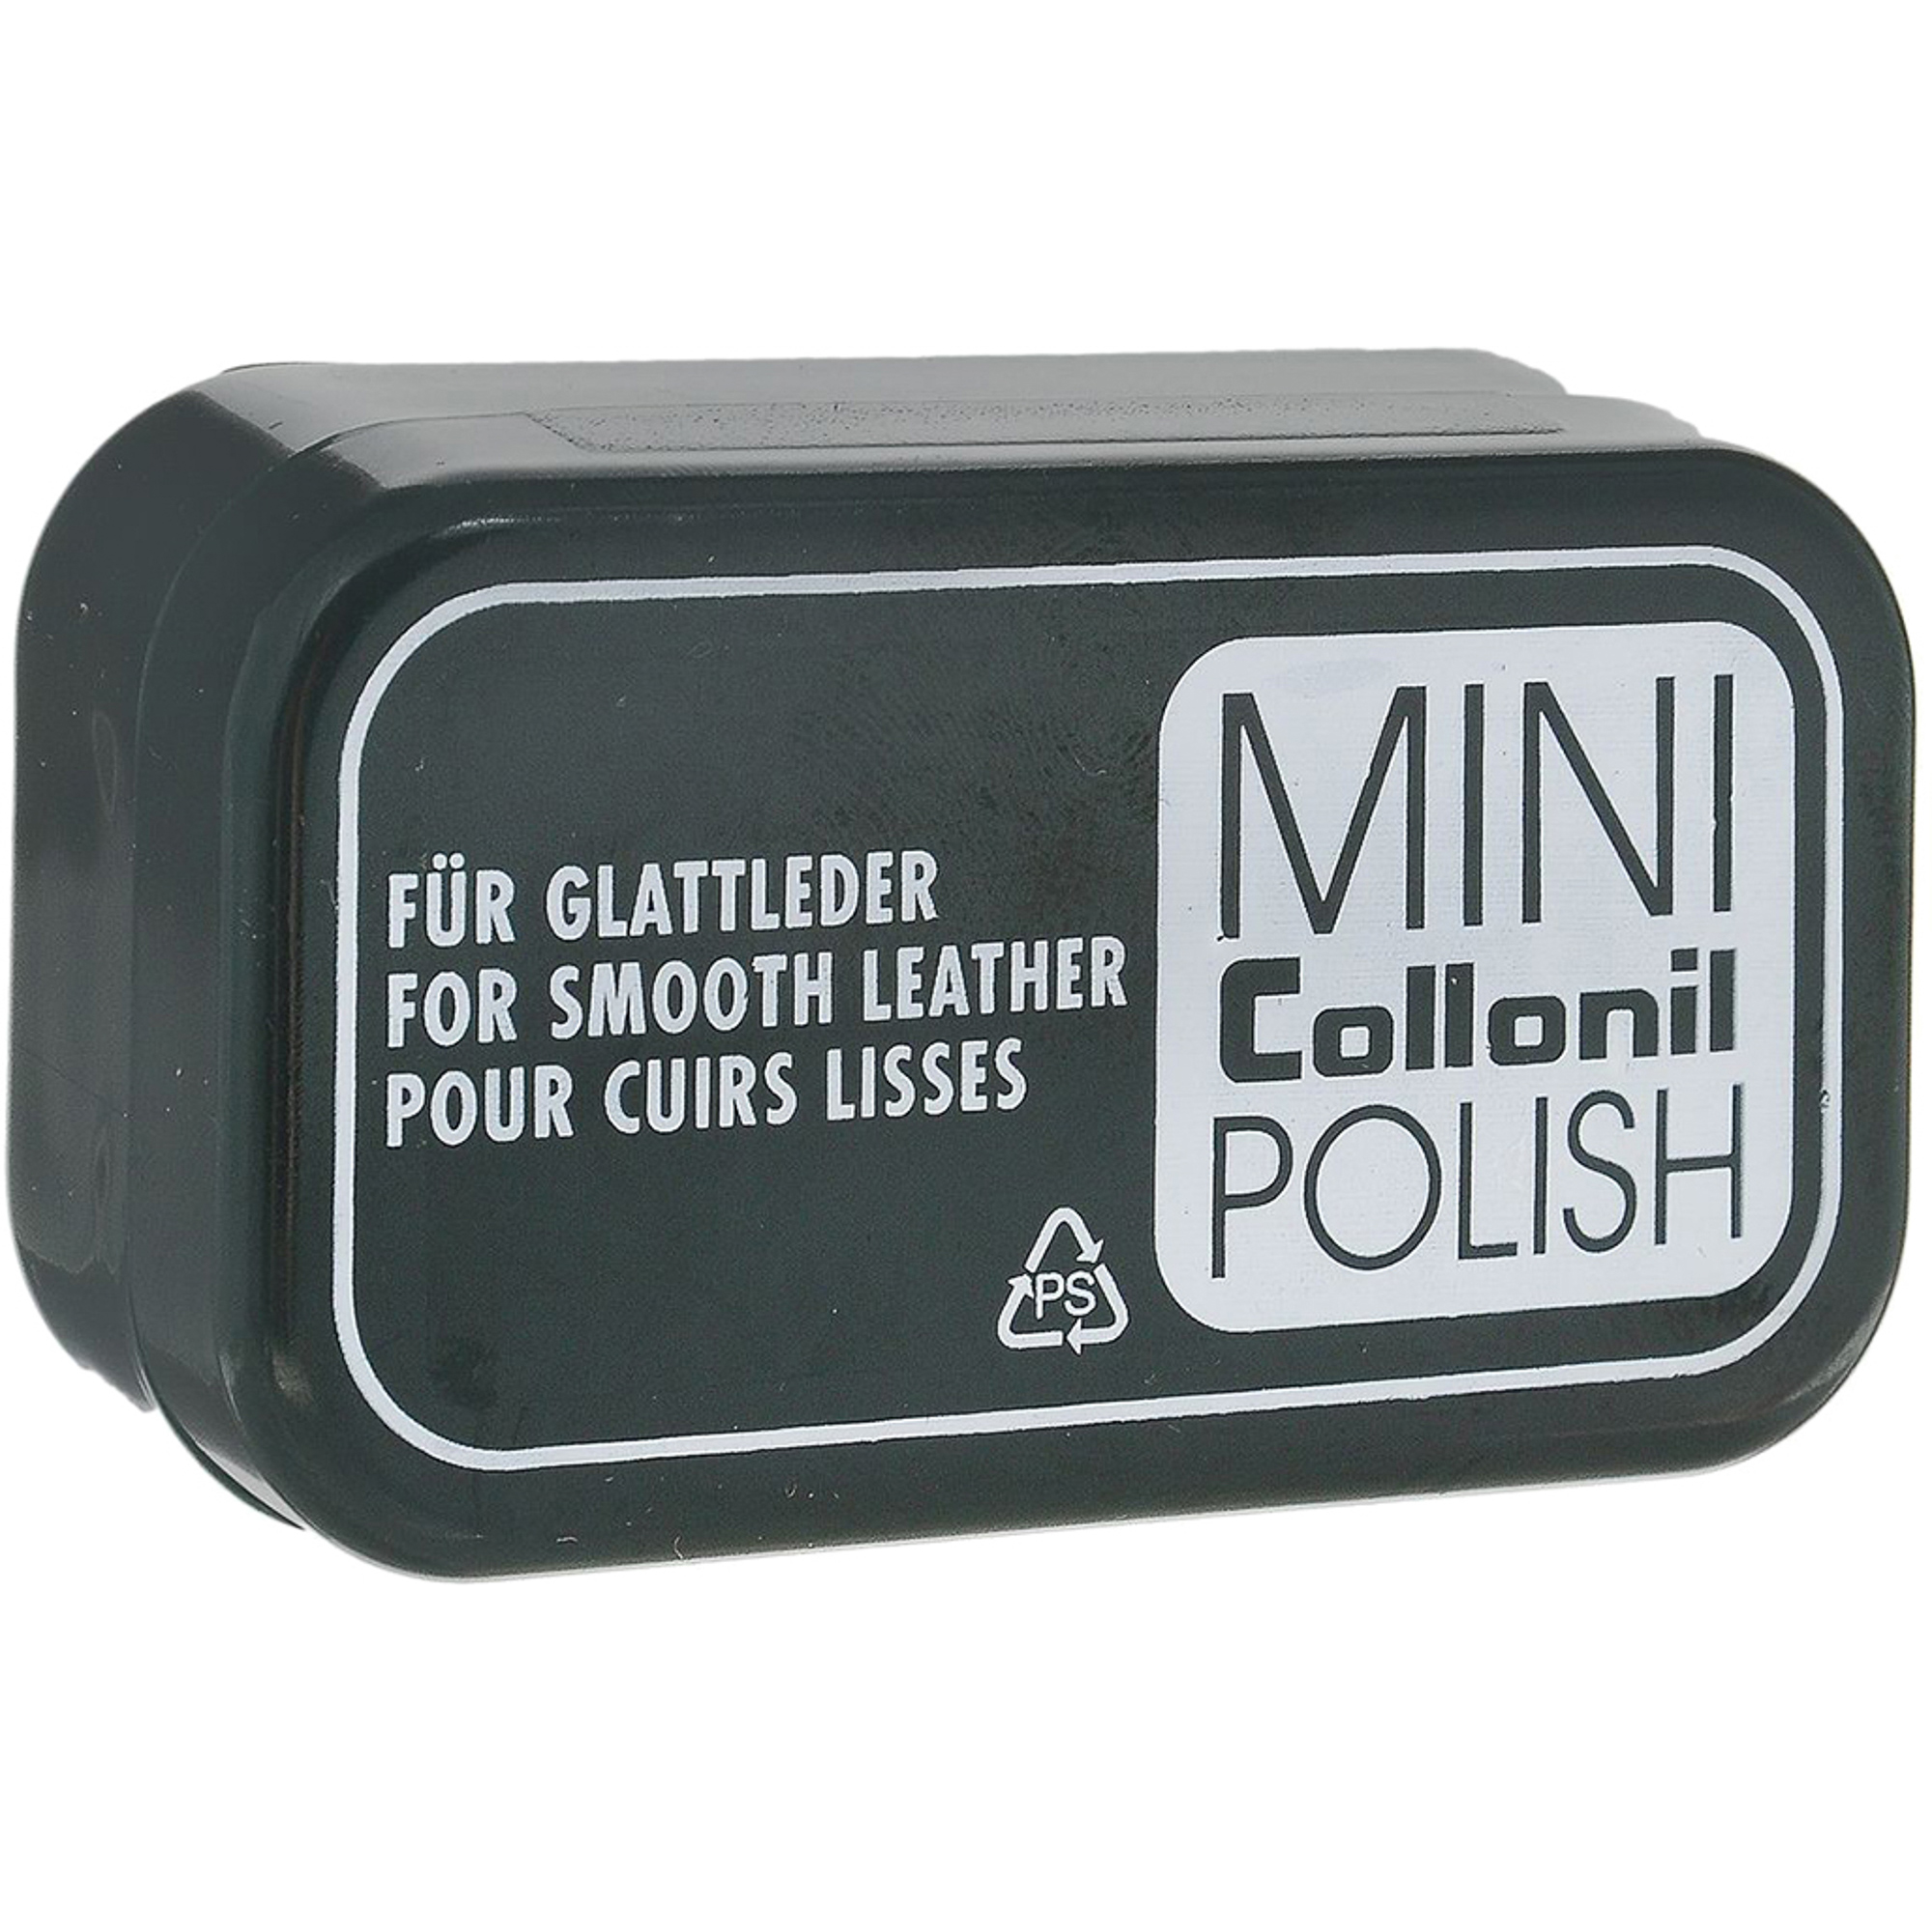 Губка для полировки Collonil Mini Polish губка rieker для полировки обуви из кожи бес ная